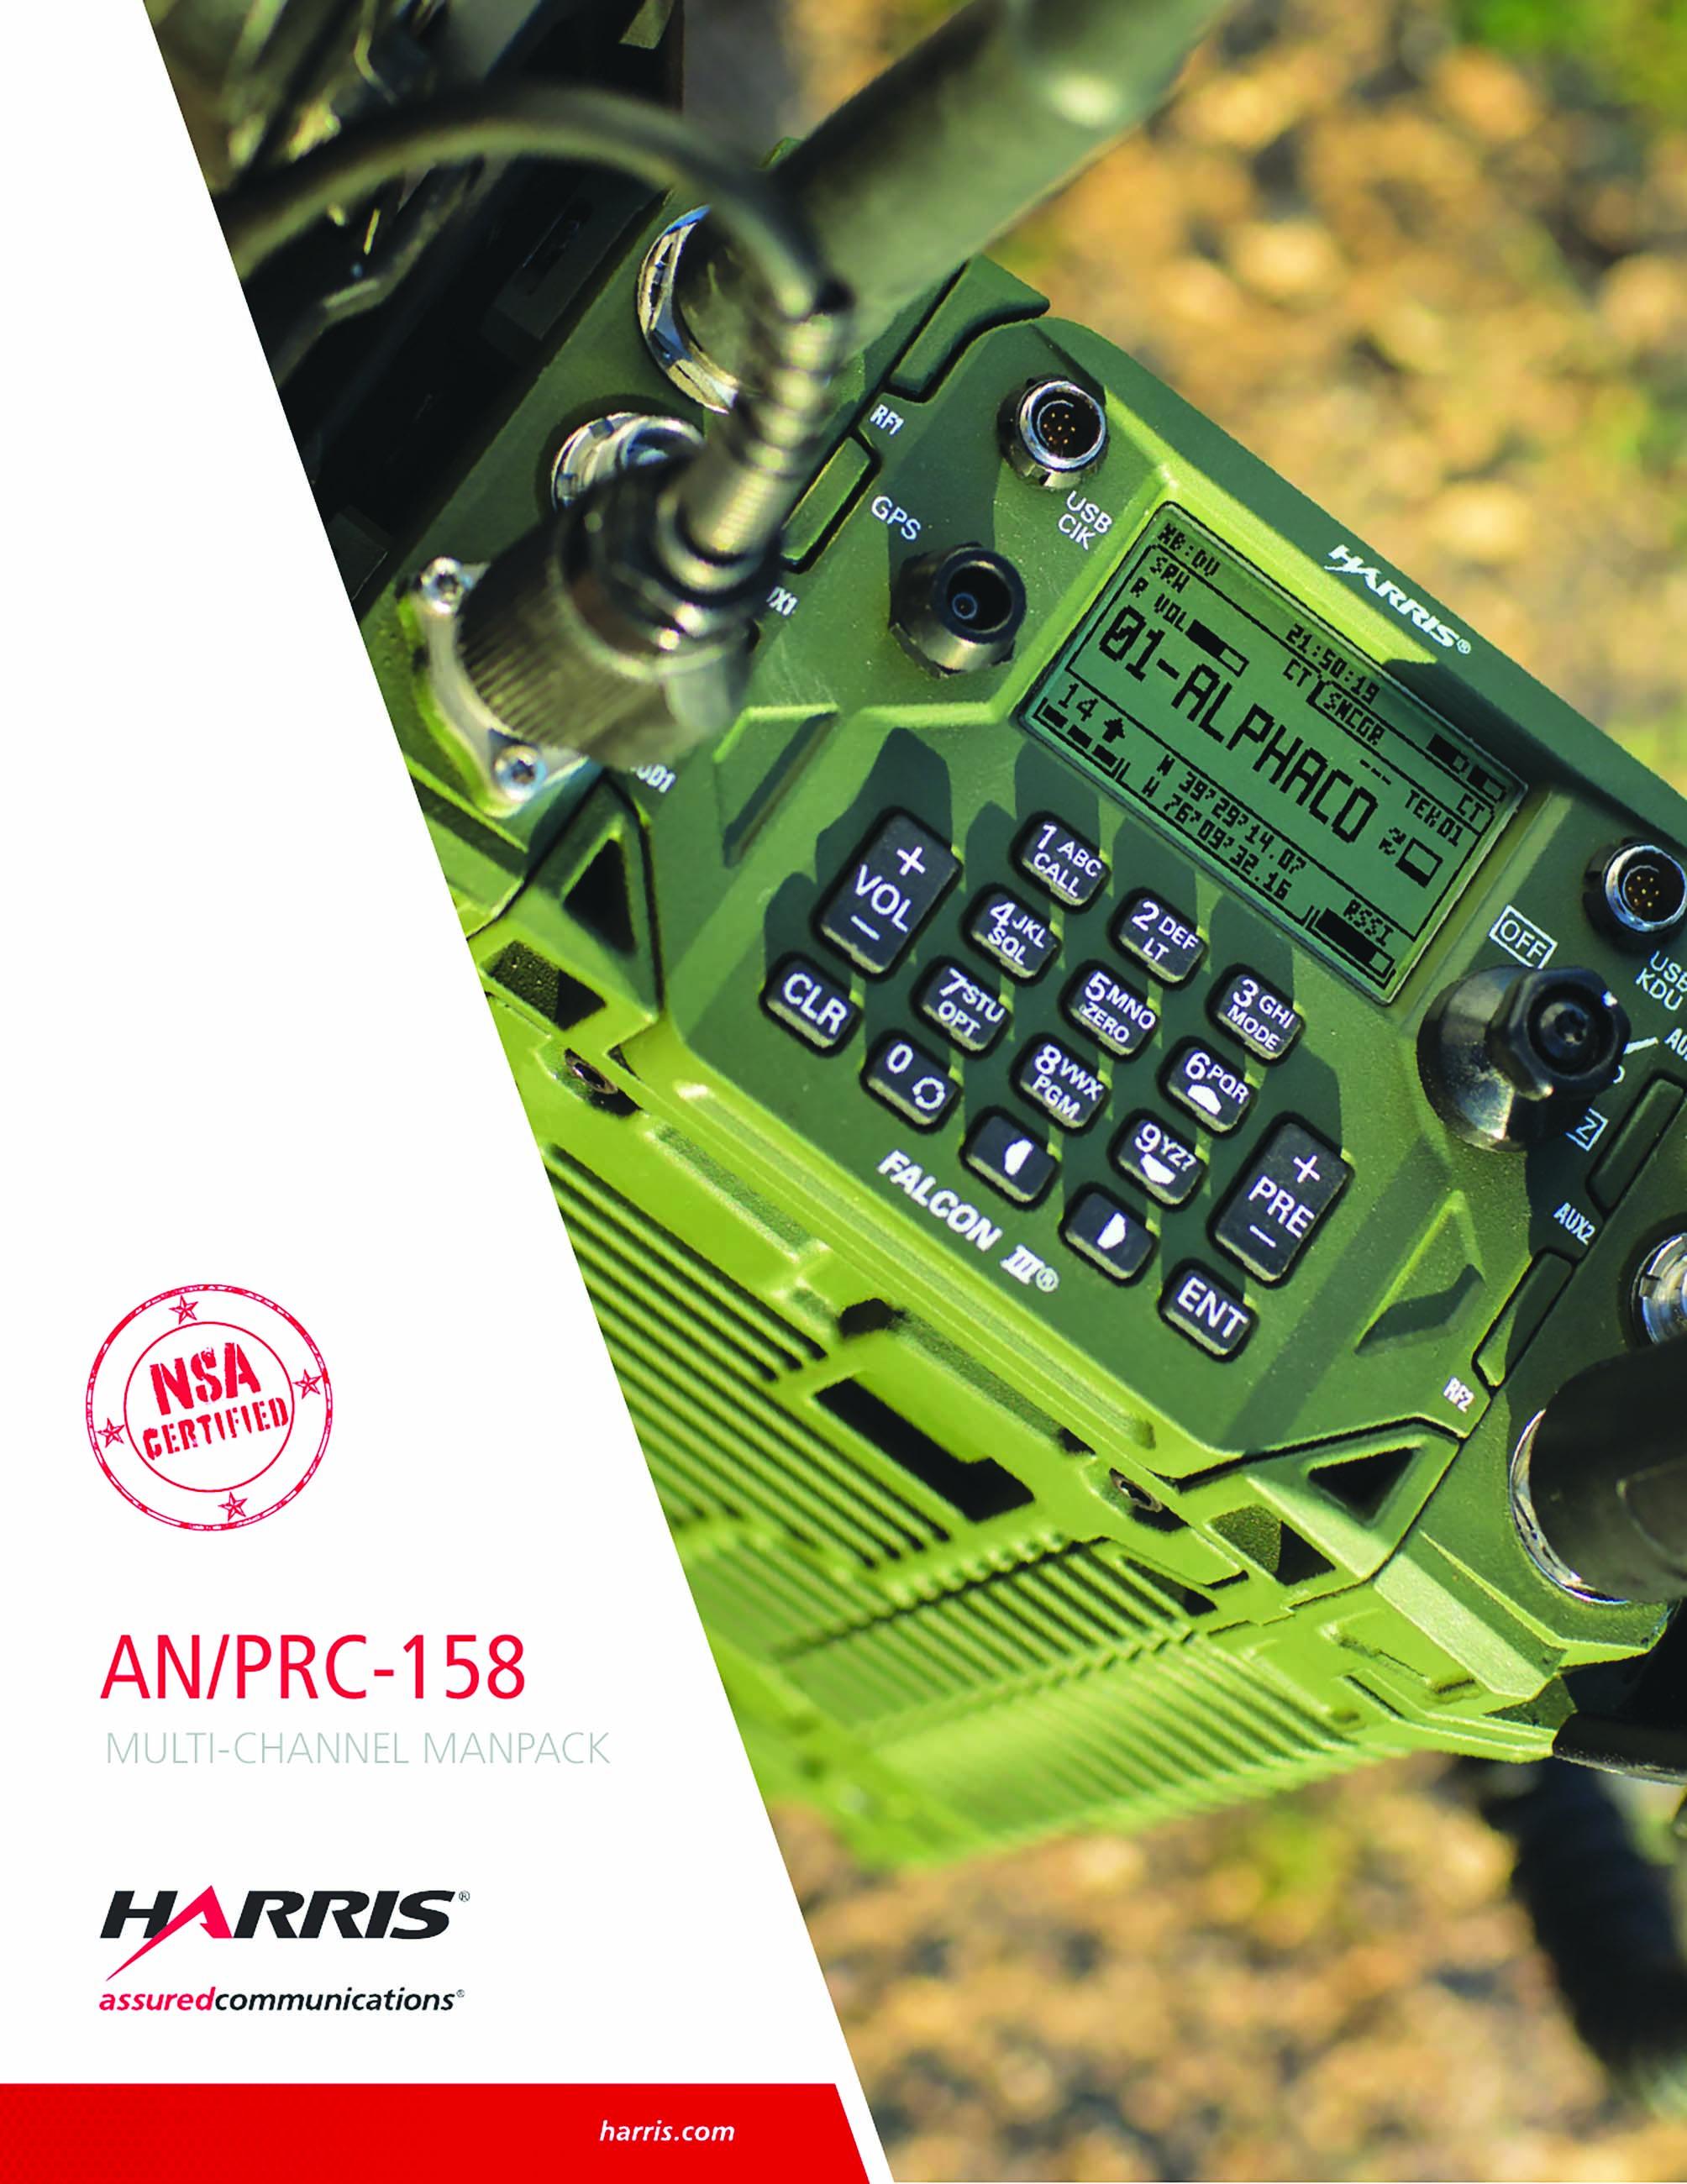 اختار الجيش الأميركي الراديو المتعدّد القنوات AN/PRC-158 لتطبيقات راجلة ومحمولة على الظهر على حدٍّ سواء. الصورة: Harris Communication Systems